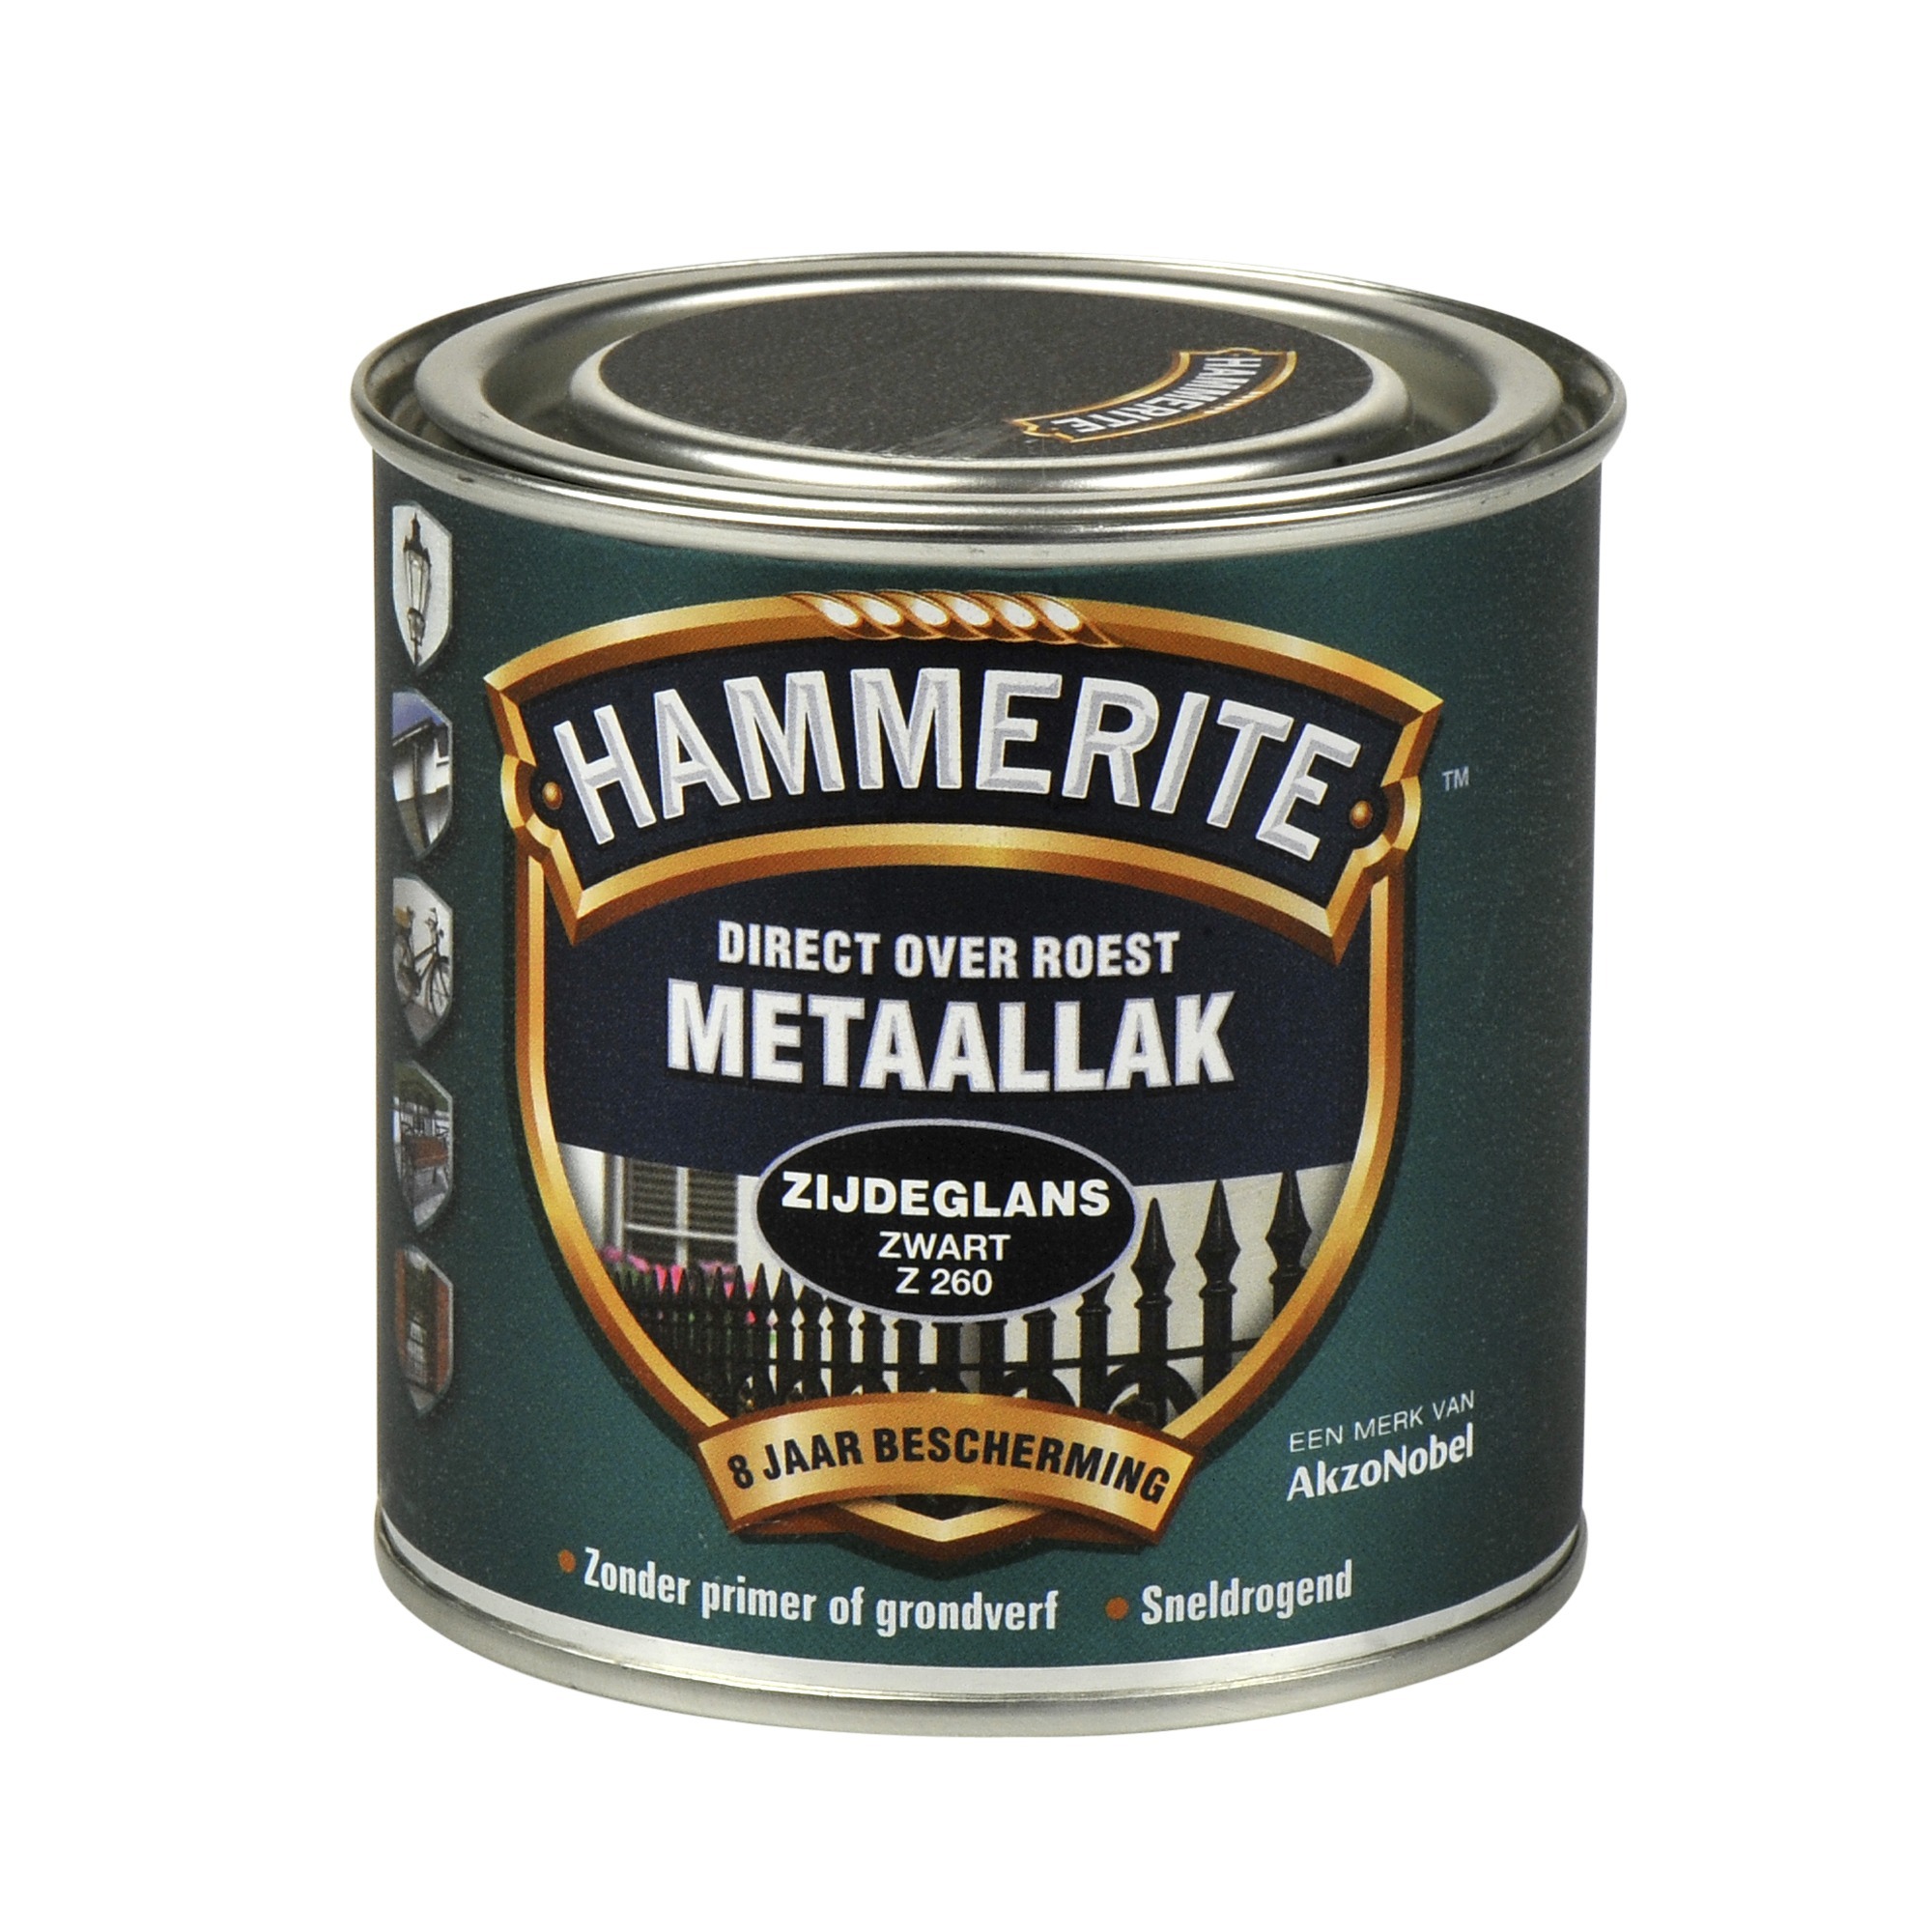 Hammerite direct over roest metaallak zijdeglans zwart - 250 ml